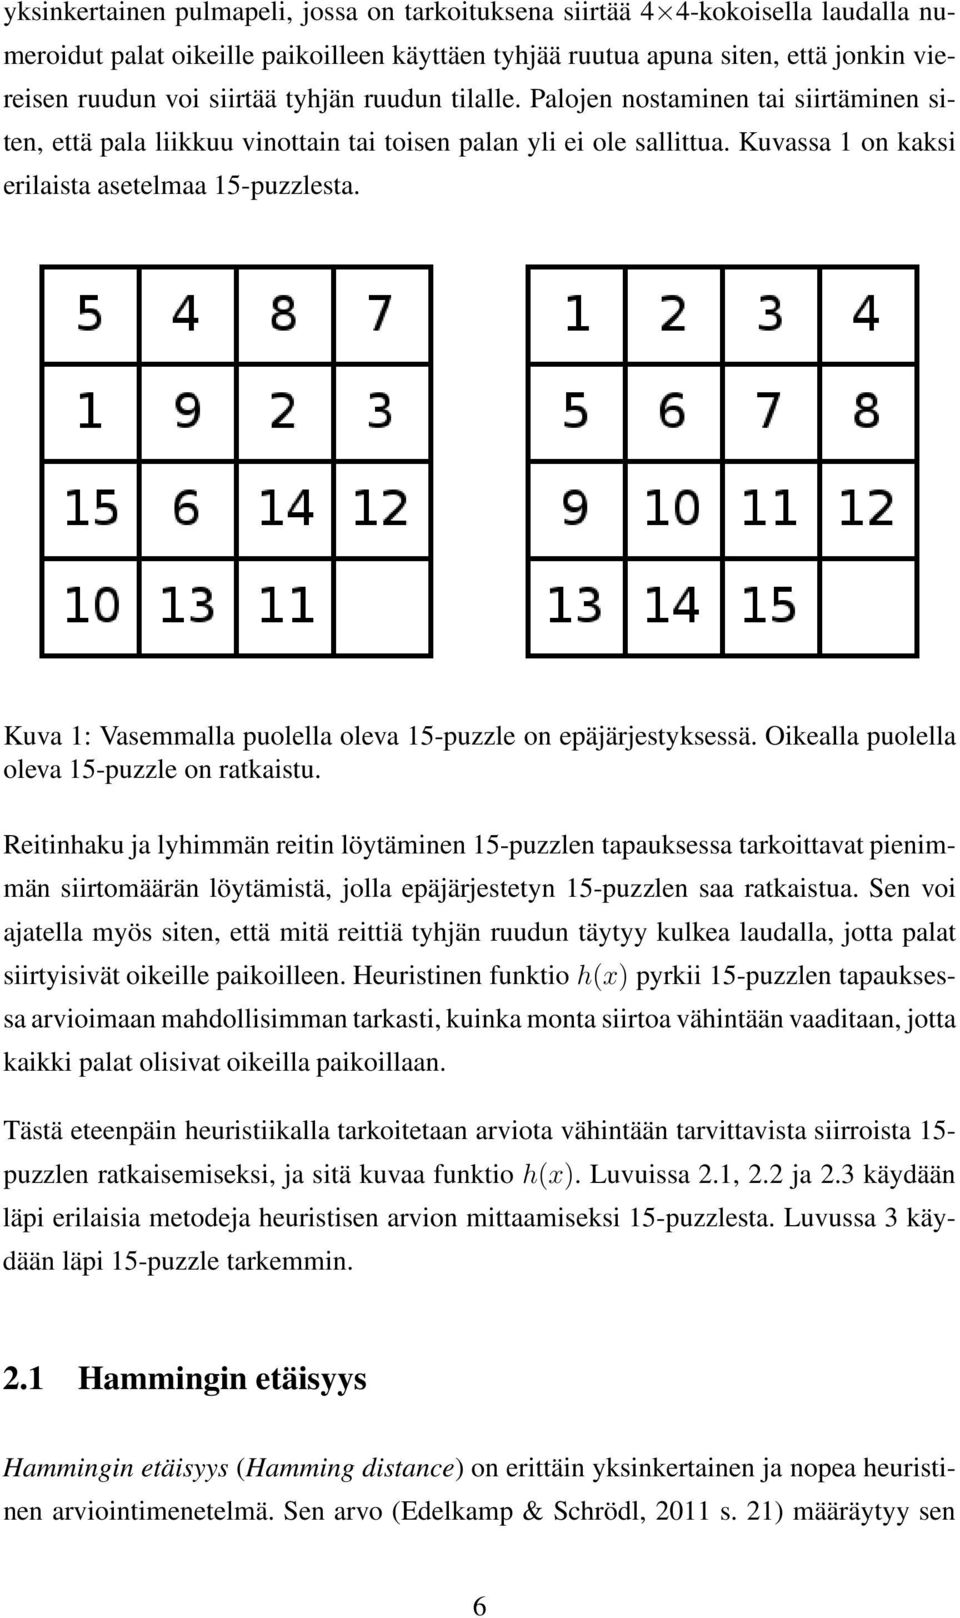 Kuva 1: Vasemmalla puolella oleva 15-puzzle on epäjärjestyksessä. Oikealla puolella oleva 15-puzzle on ratkaistu.